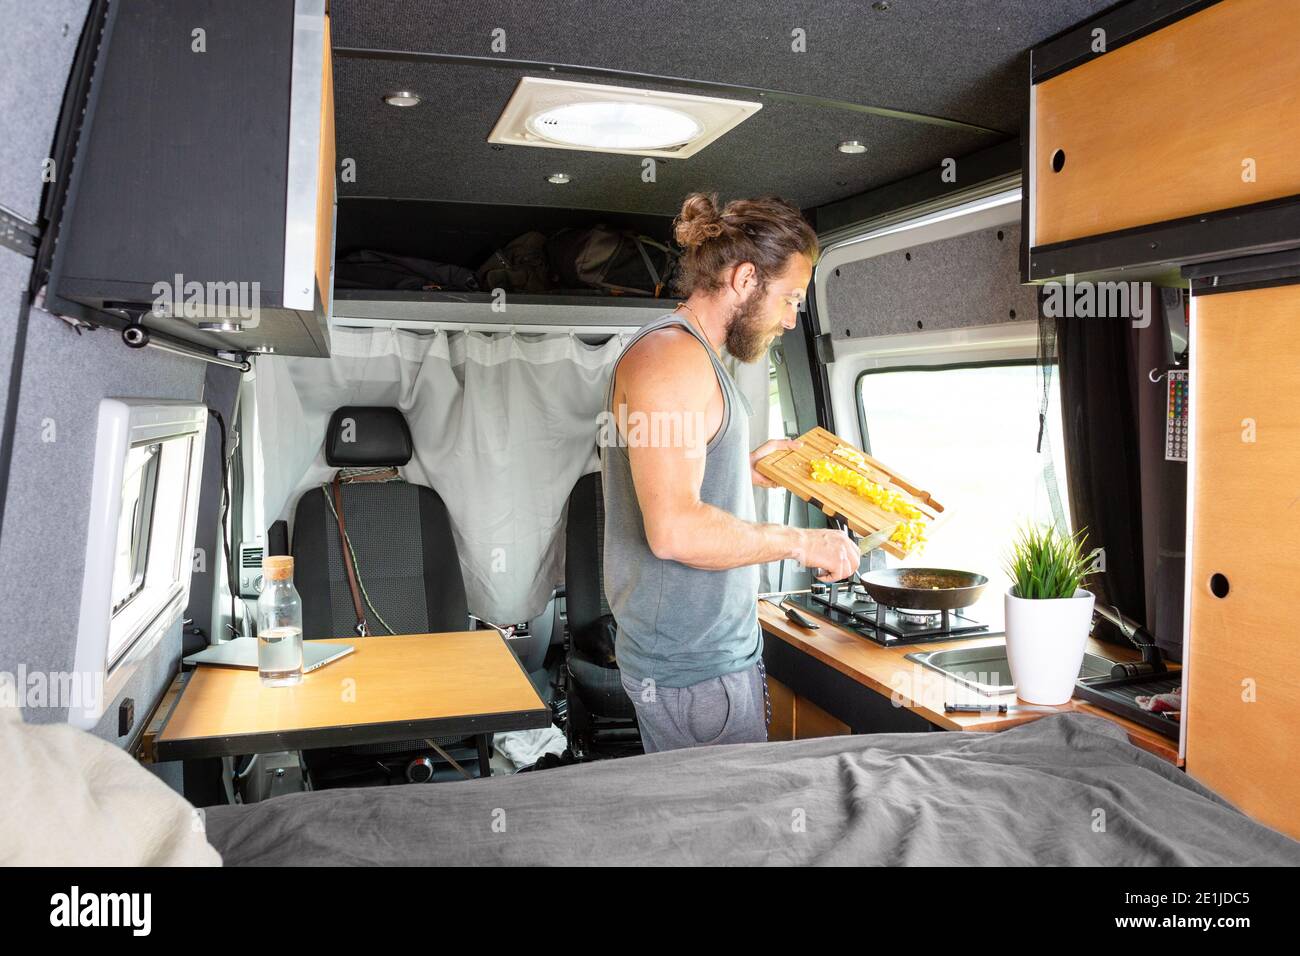 Man inside his camper van is preparing food Stock Photo